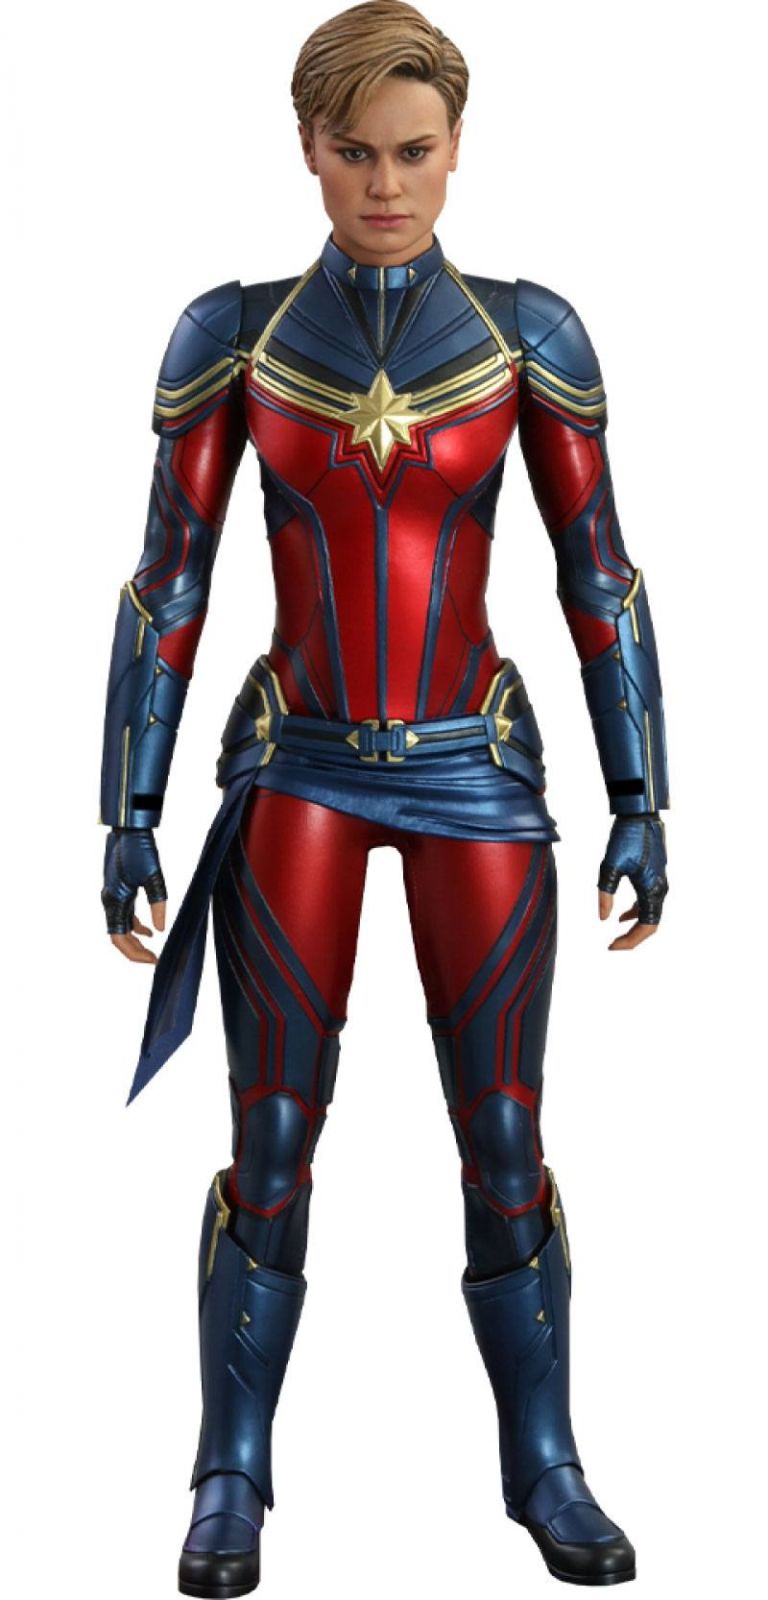 Avengers: Endgame Movie Masterpiece Series PVC Action Figure 1/6 Captain Marvel 29 cm Hot Toys